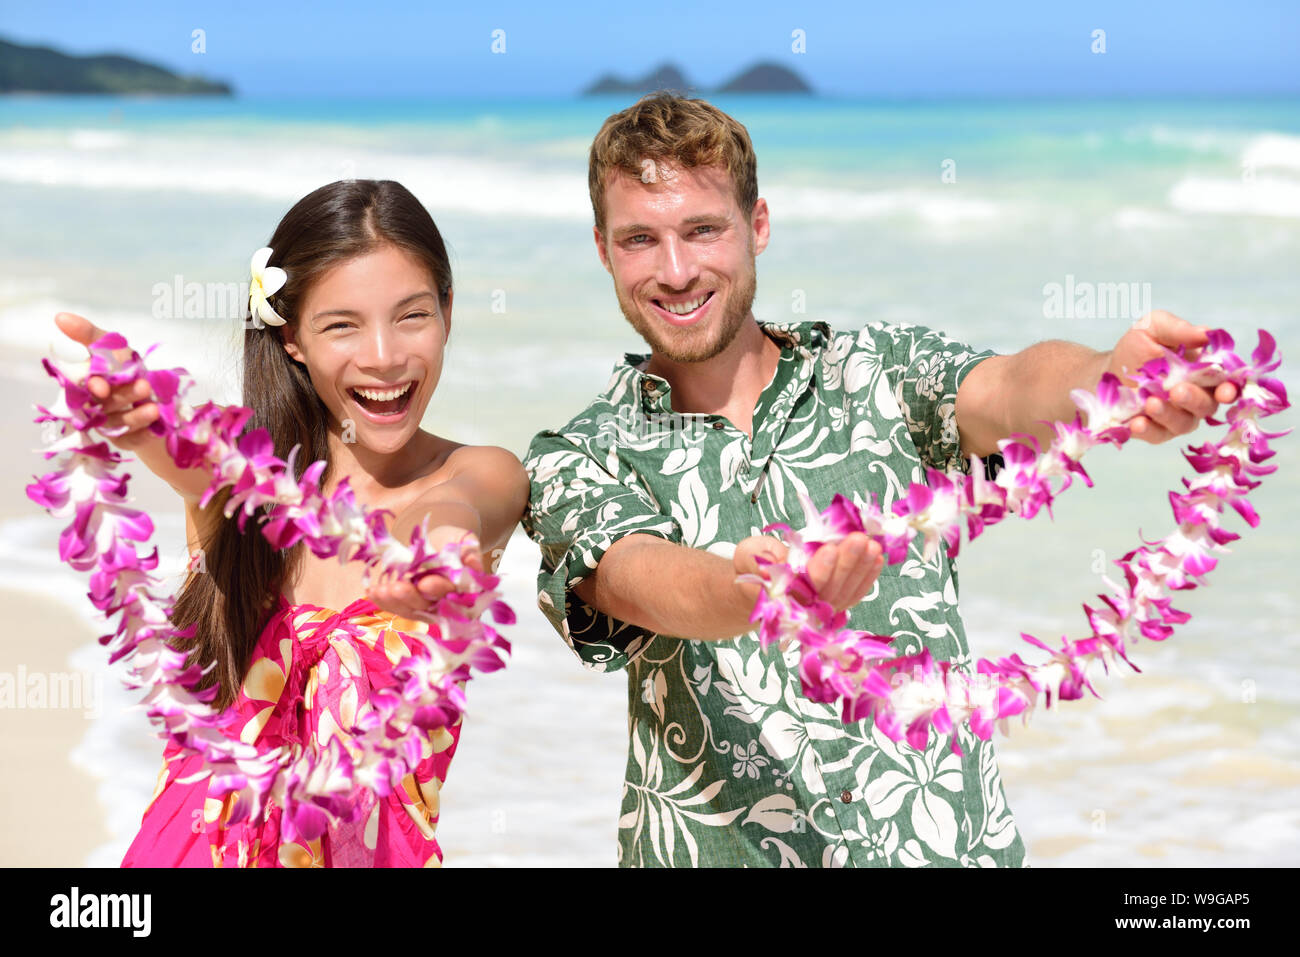 Willkommen auf Hawaii - Hawaii Menschen geben leis Blume Halsketten als  einladende Geste für den Tourismus. Reisen Urlaub Konzept. Asiatische Frau  und kaukasischen Mann auf White Sand Beach in Aloha Kleidung  Stockfotografie -